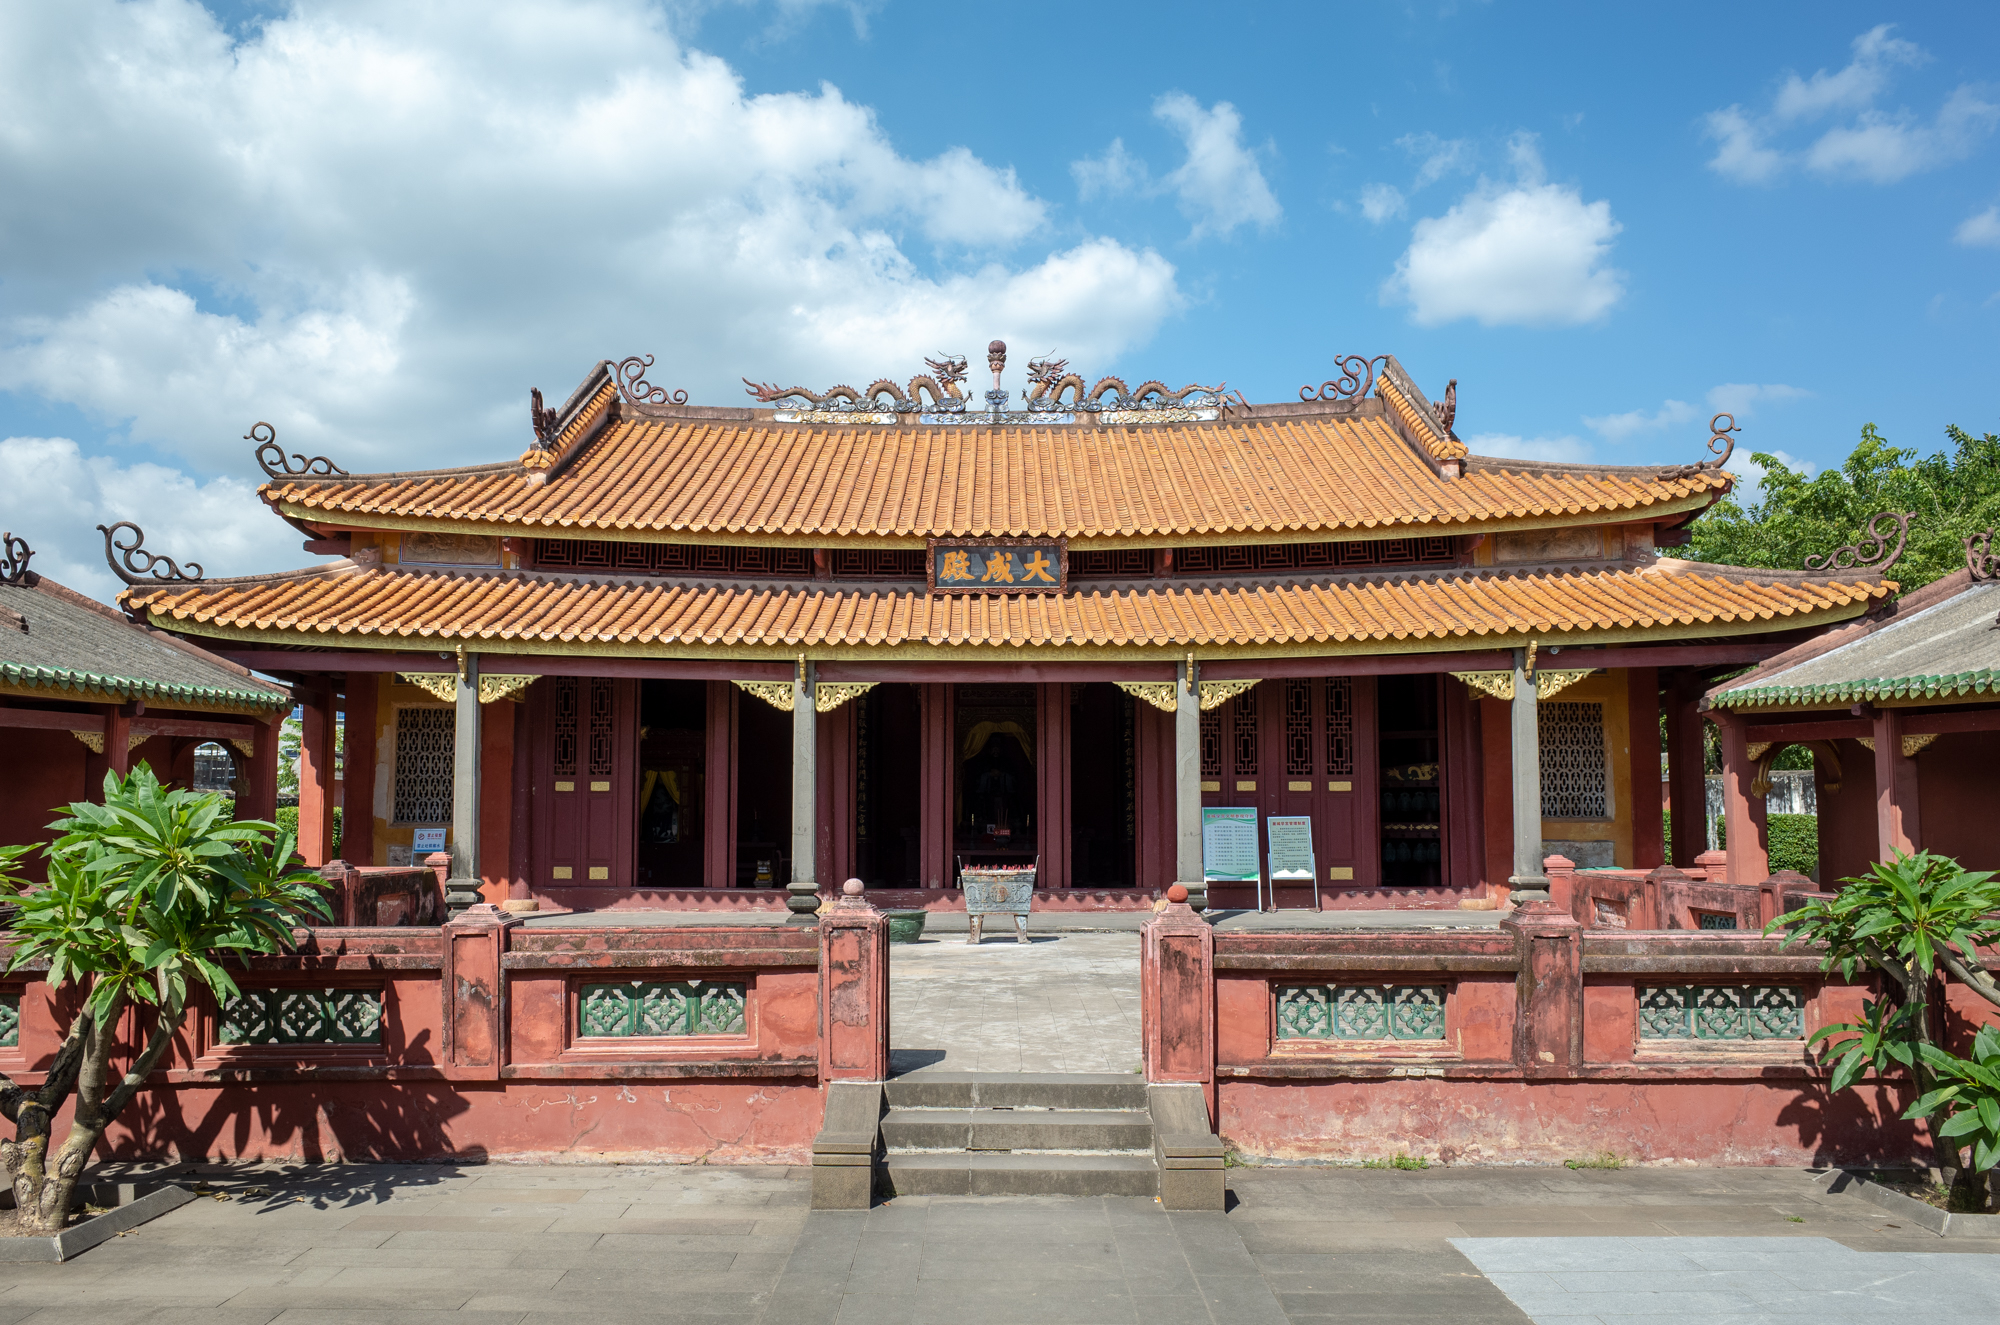 原创海南被遗忘的古城中国最南的孔庙在这门票免费知道的人却不多